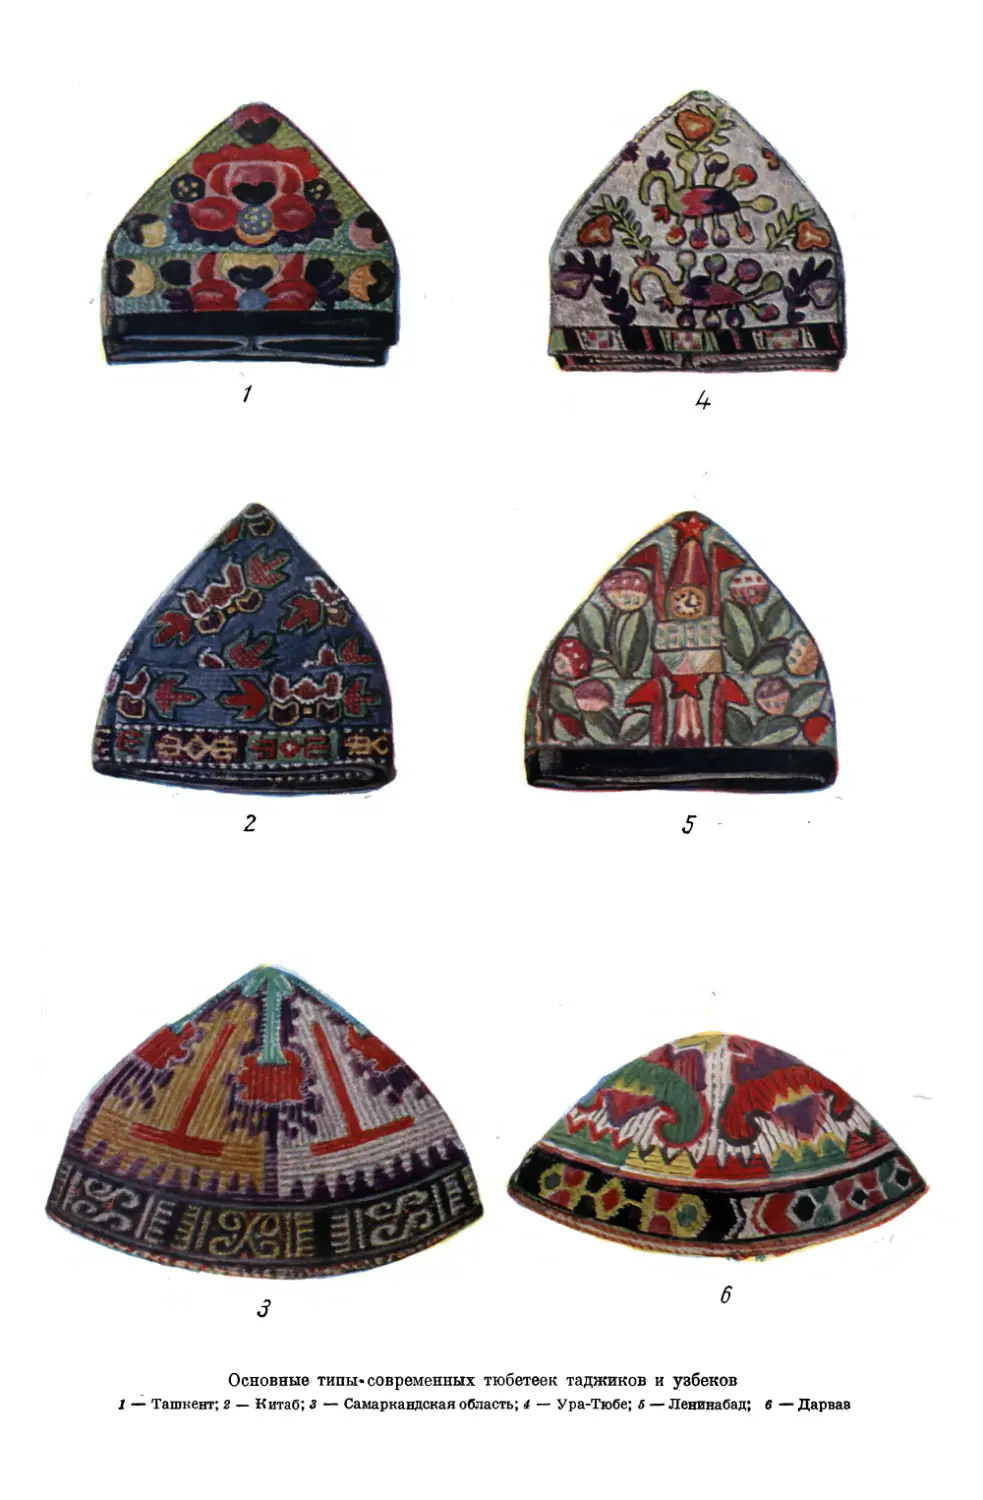 Вклейка. Основные типы современных тюбетеек таджиков и узбеков